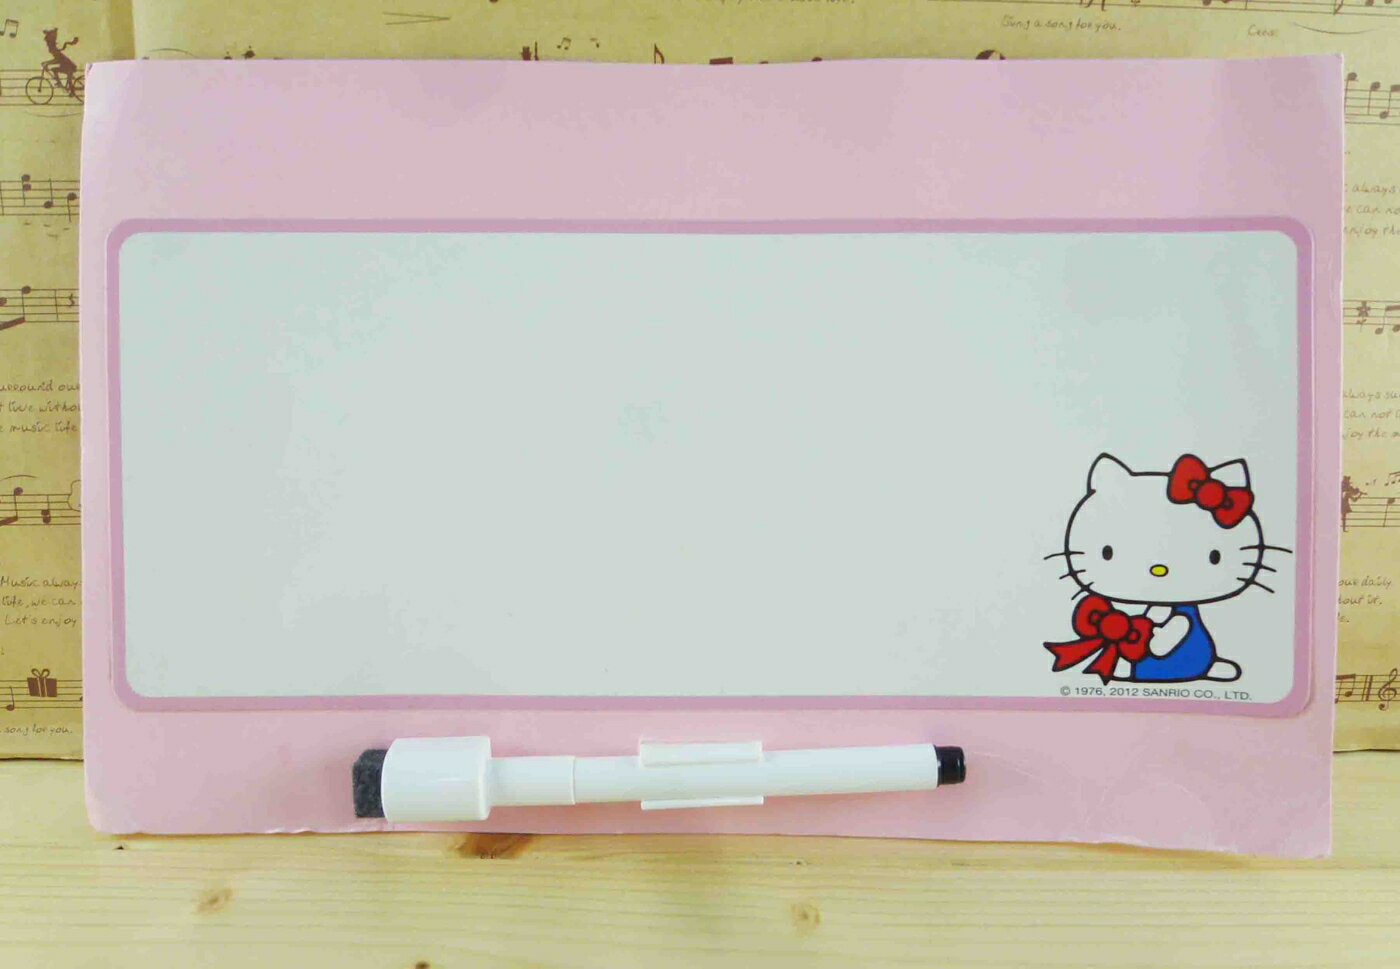 【震撼精品百貨】Hello Kitty 凱蒂貓 白板-粉色坐姿圖案 震撼日式精品百貨